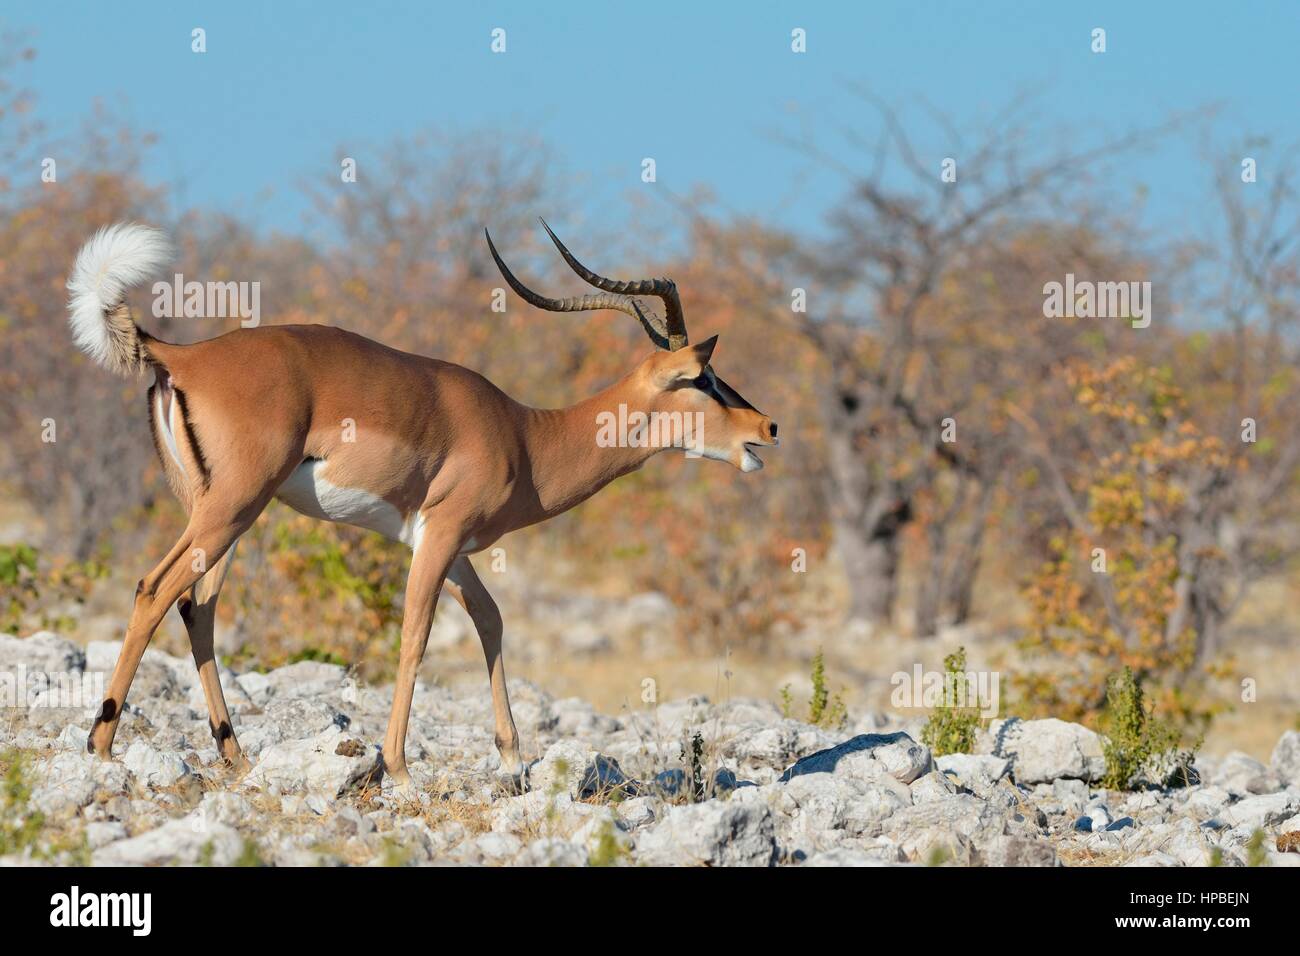 Gli impala dal muso nero (Aepyceros melampus petersi), maschio adulto sul terreno pietroso, bicchieratura, il Parco Nazionale di Etosha, Namibia, Africa Foto Stock